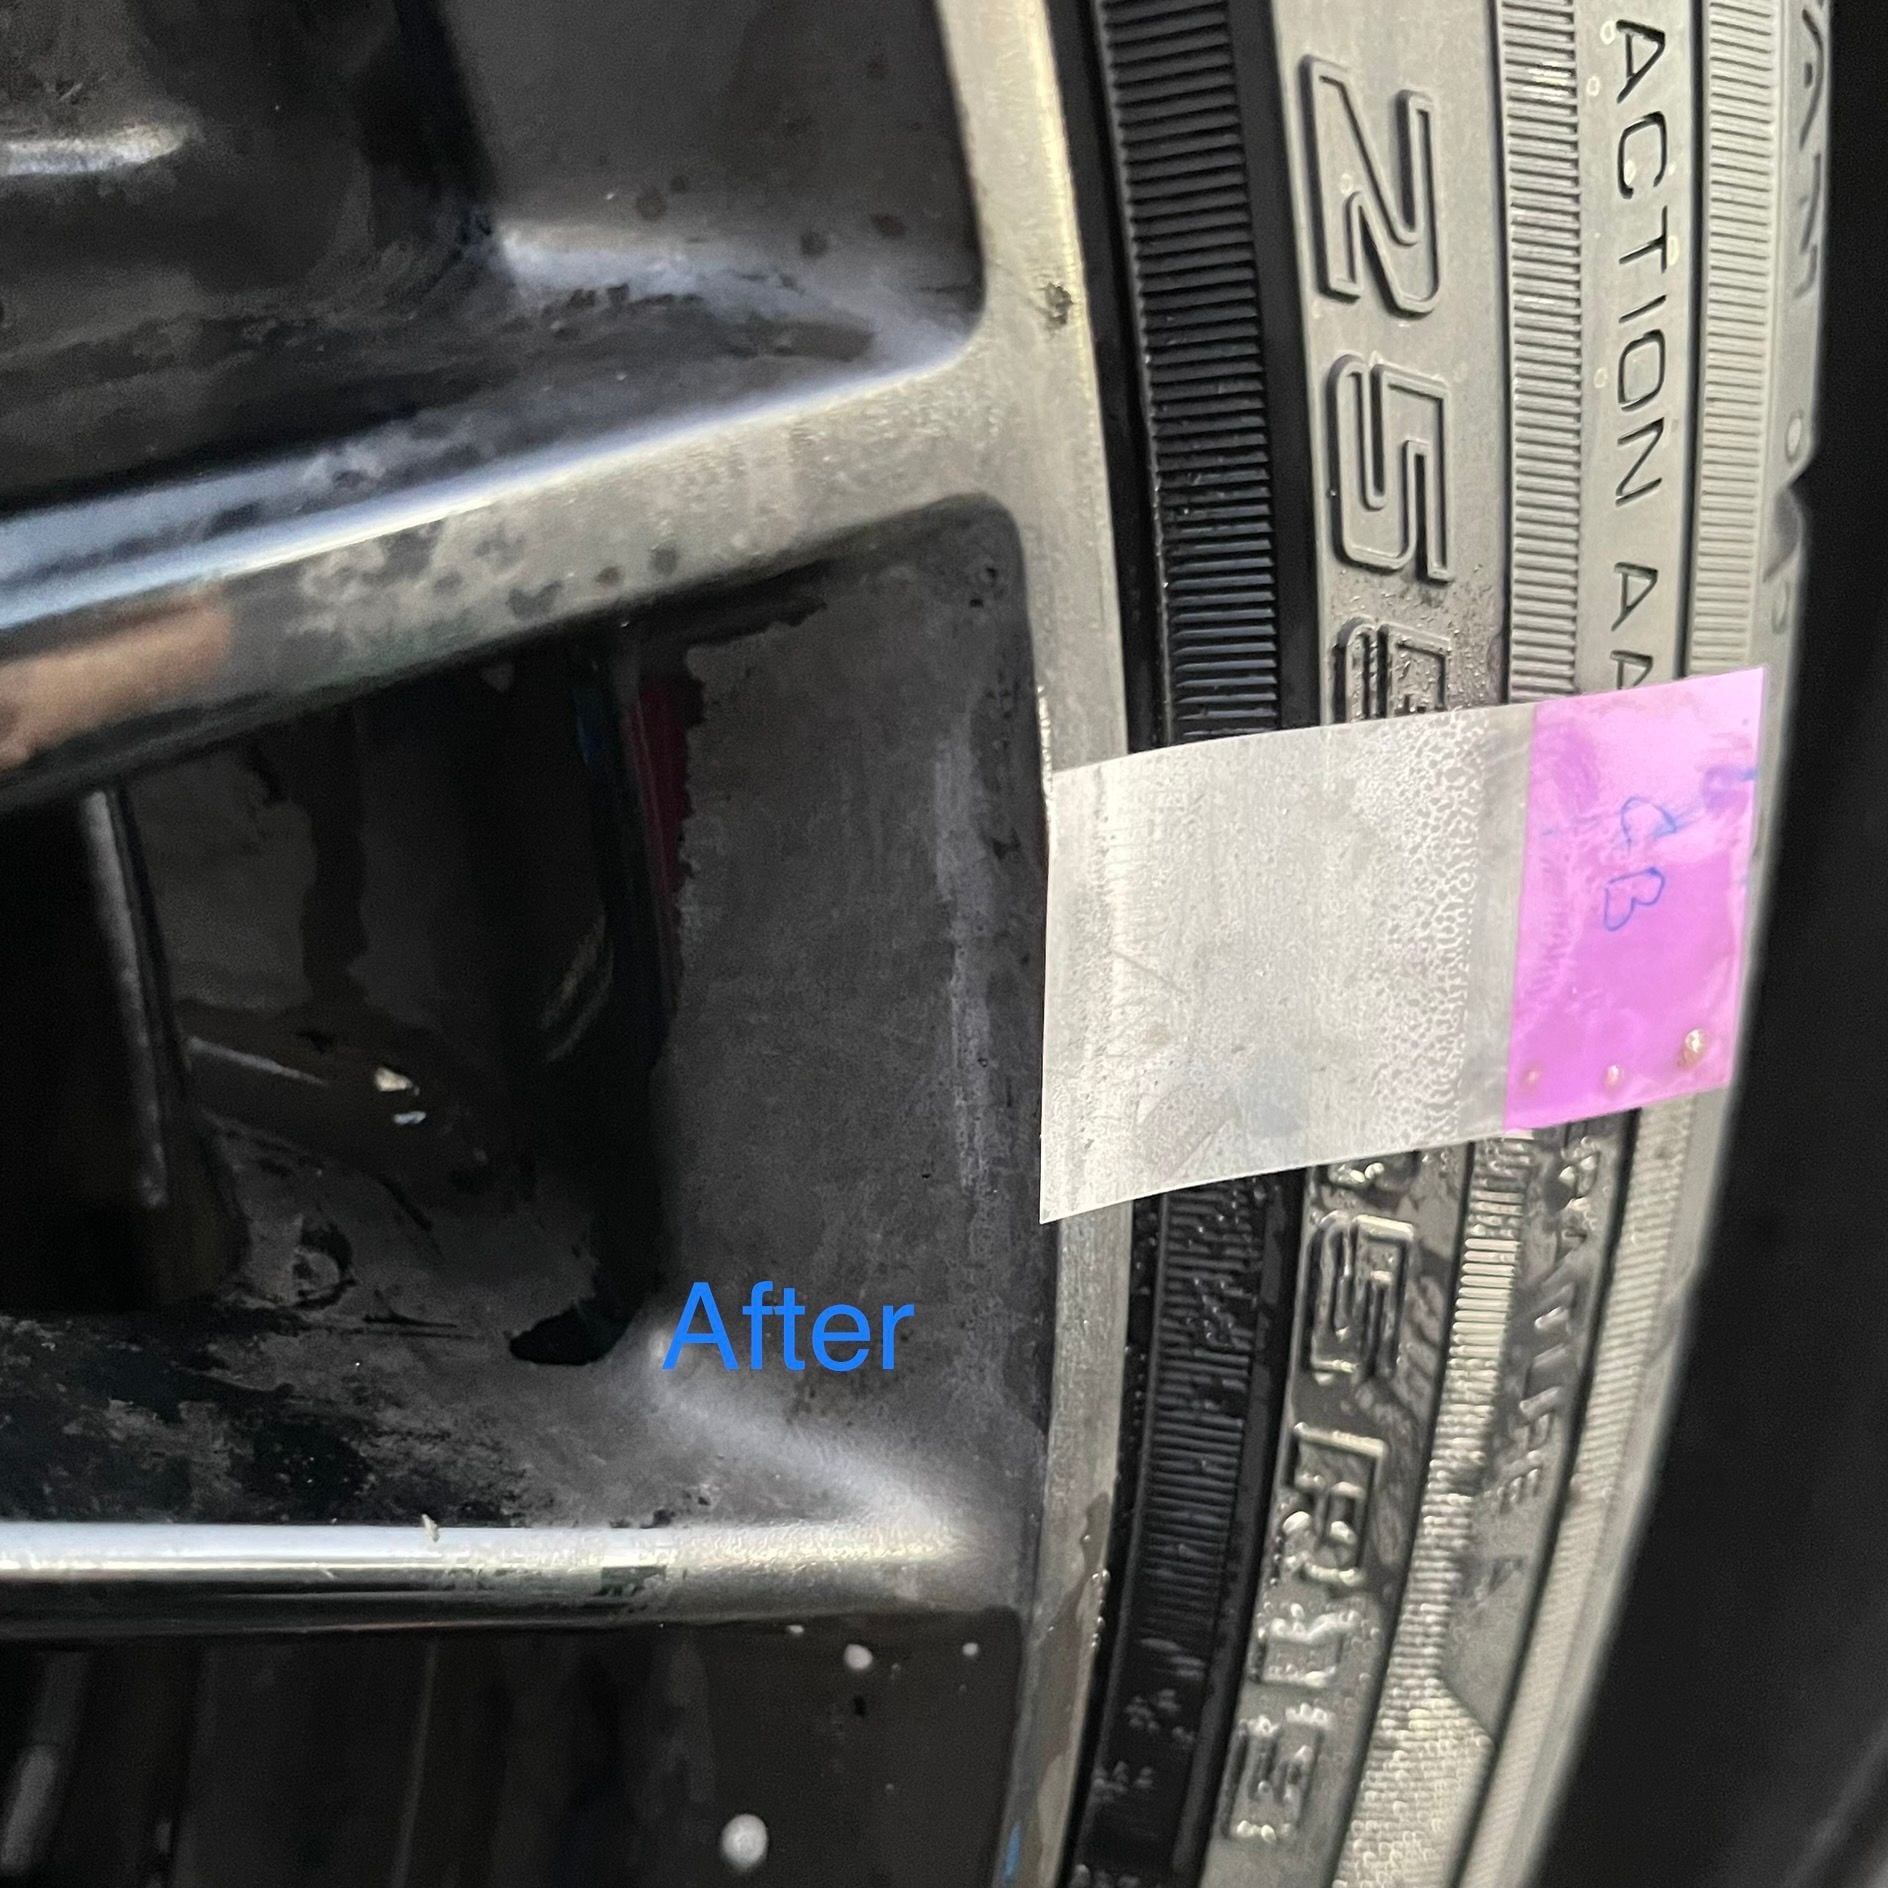 Meguiar's D14301 Non Acid Tire & Wheel Cleaner, 1 Gallon, 128